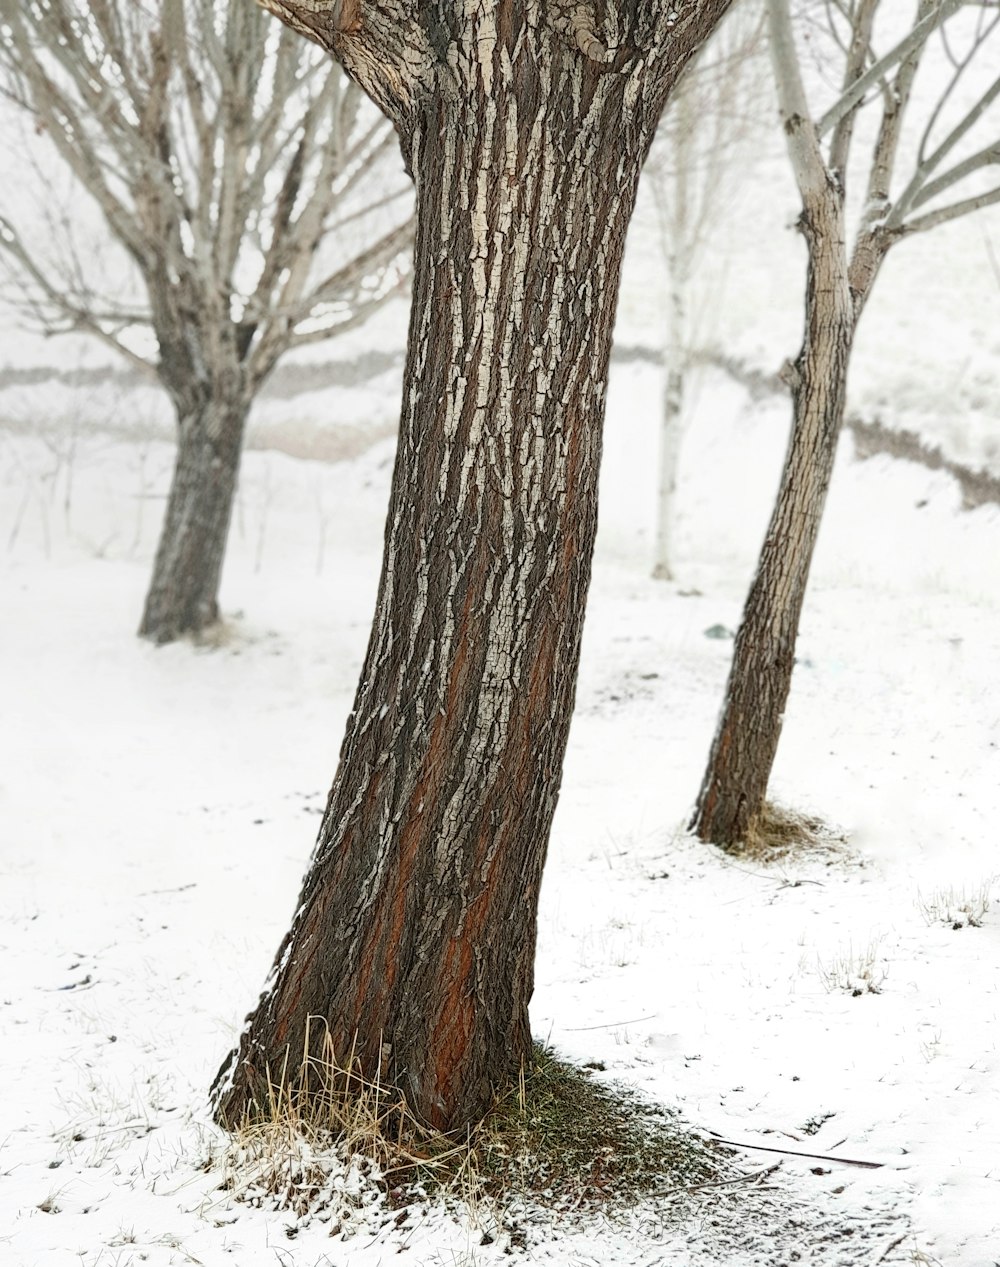 tronco marrom da árvore no chão coberto de neve